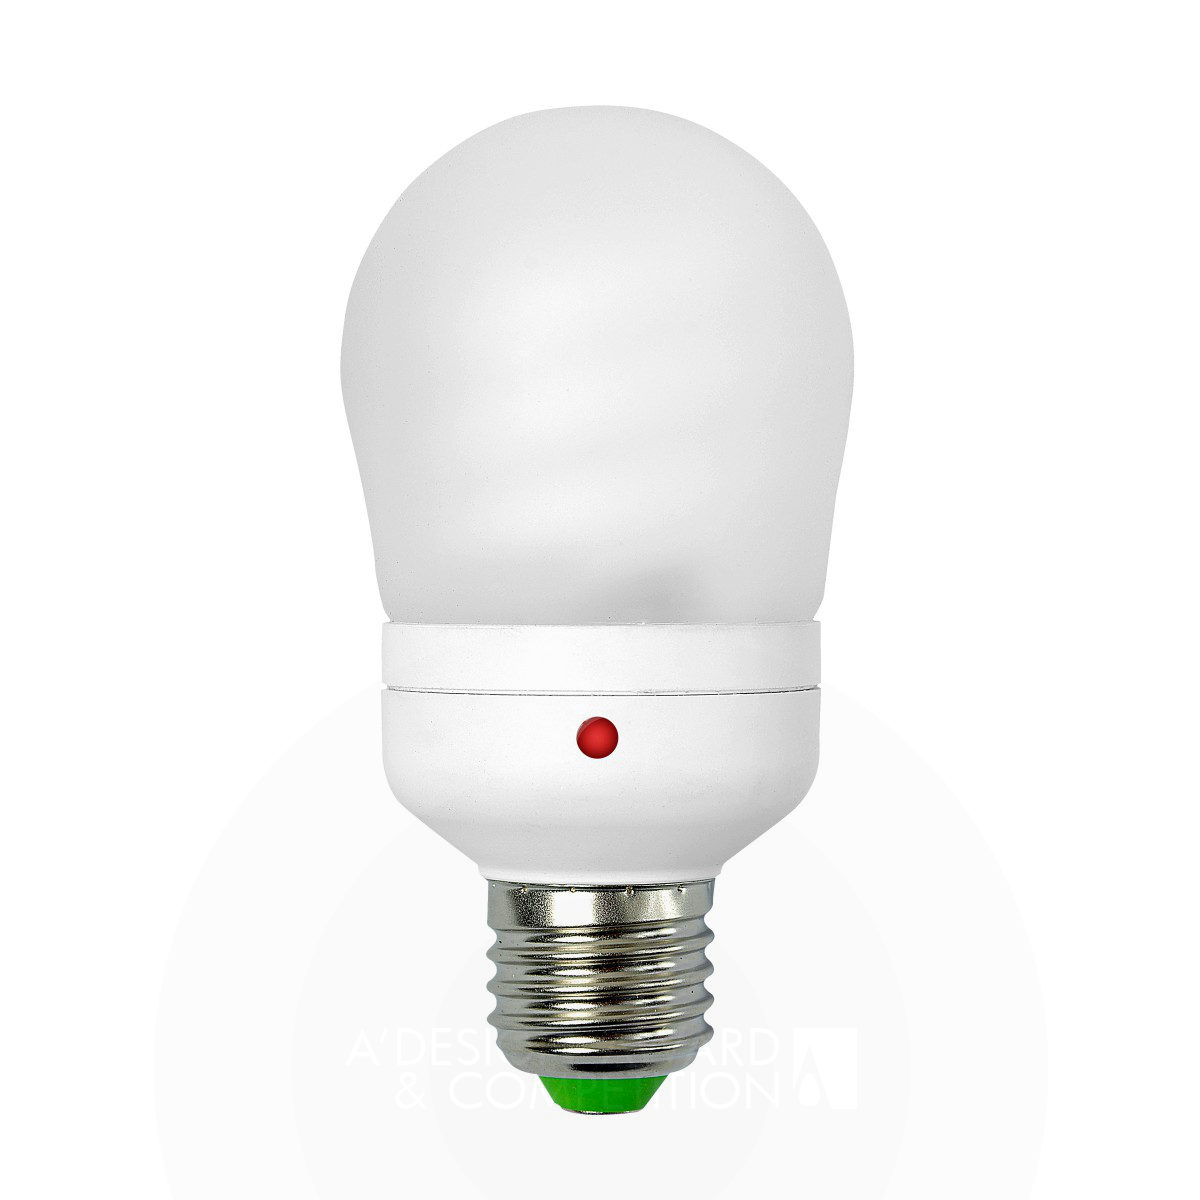 Dahom CFL Sensor Light Sensor Activated Energy Saving Lamp by Dahom